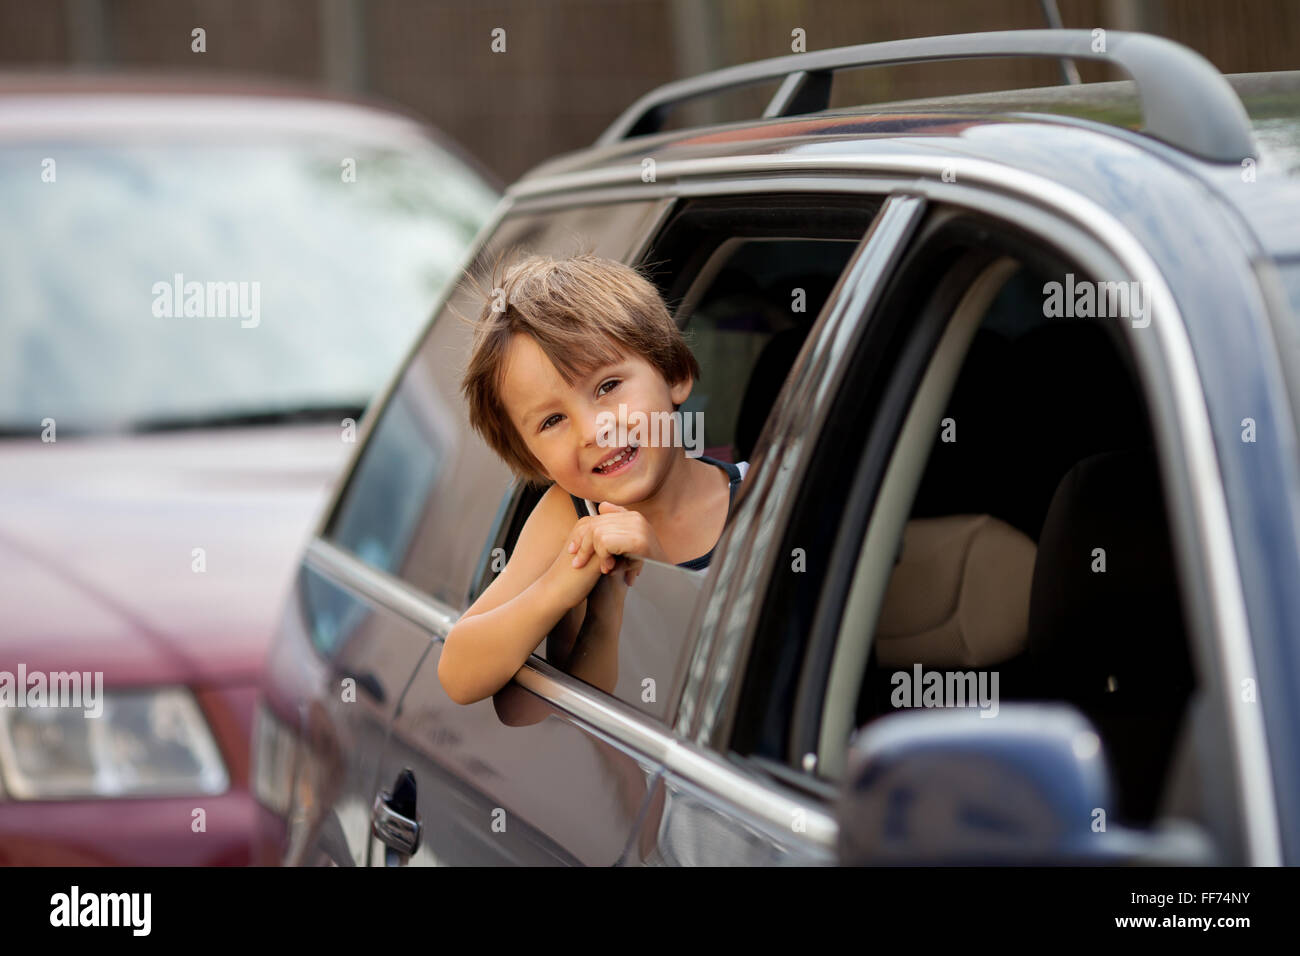 Mignon petit enfant, garçon, regardant par la fenêtre d'une voiture, smiling Banque D'Images